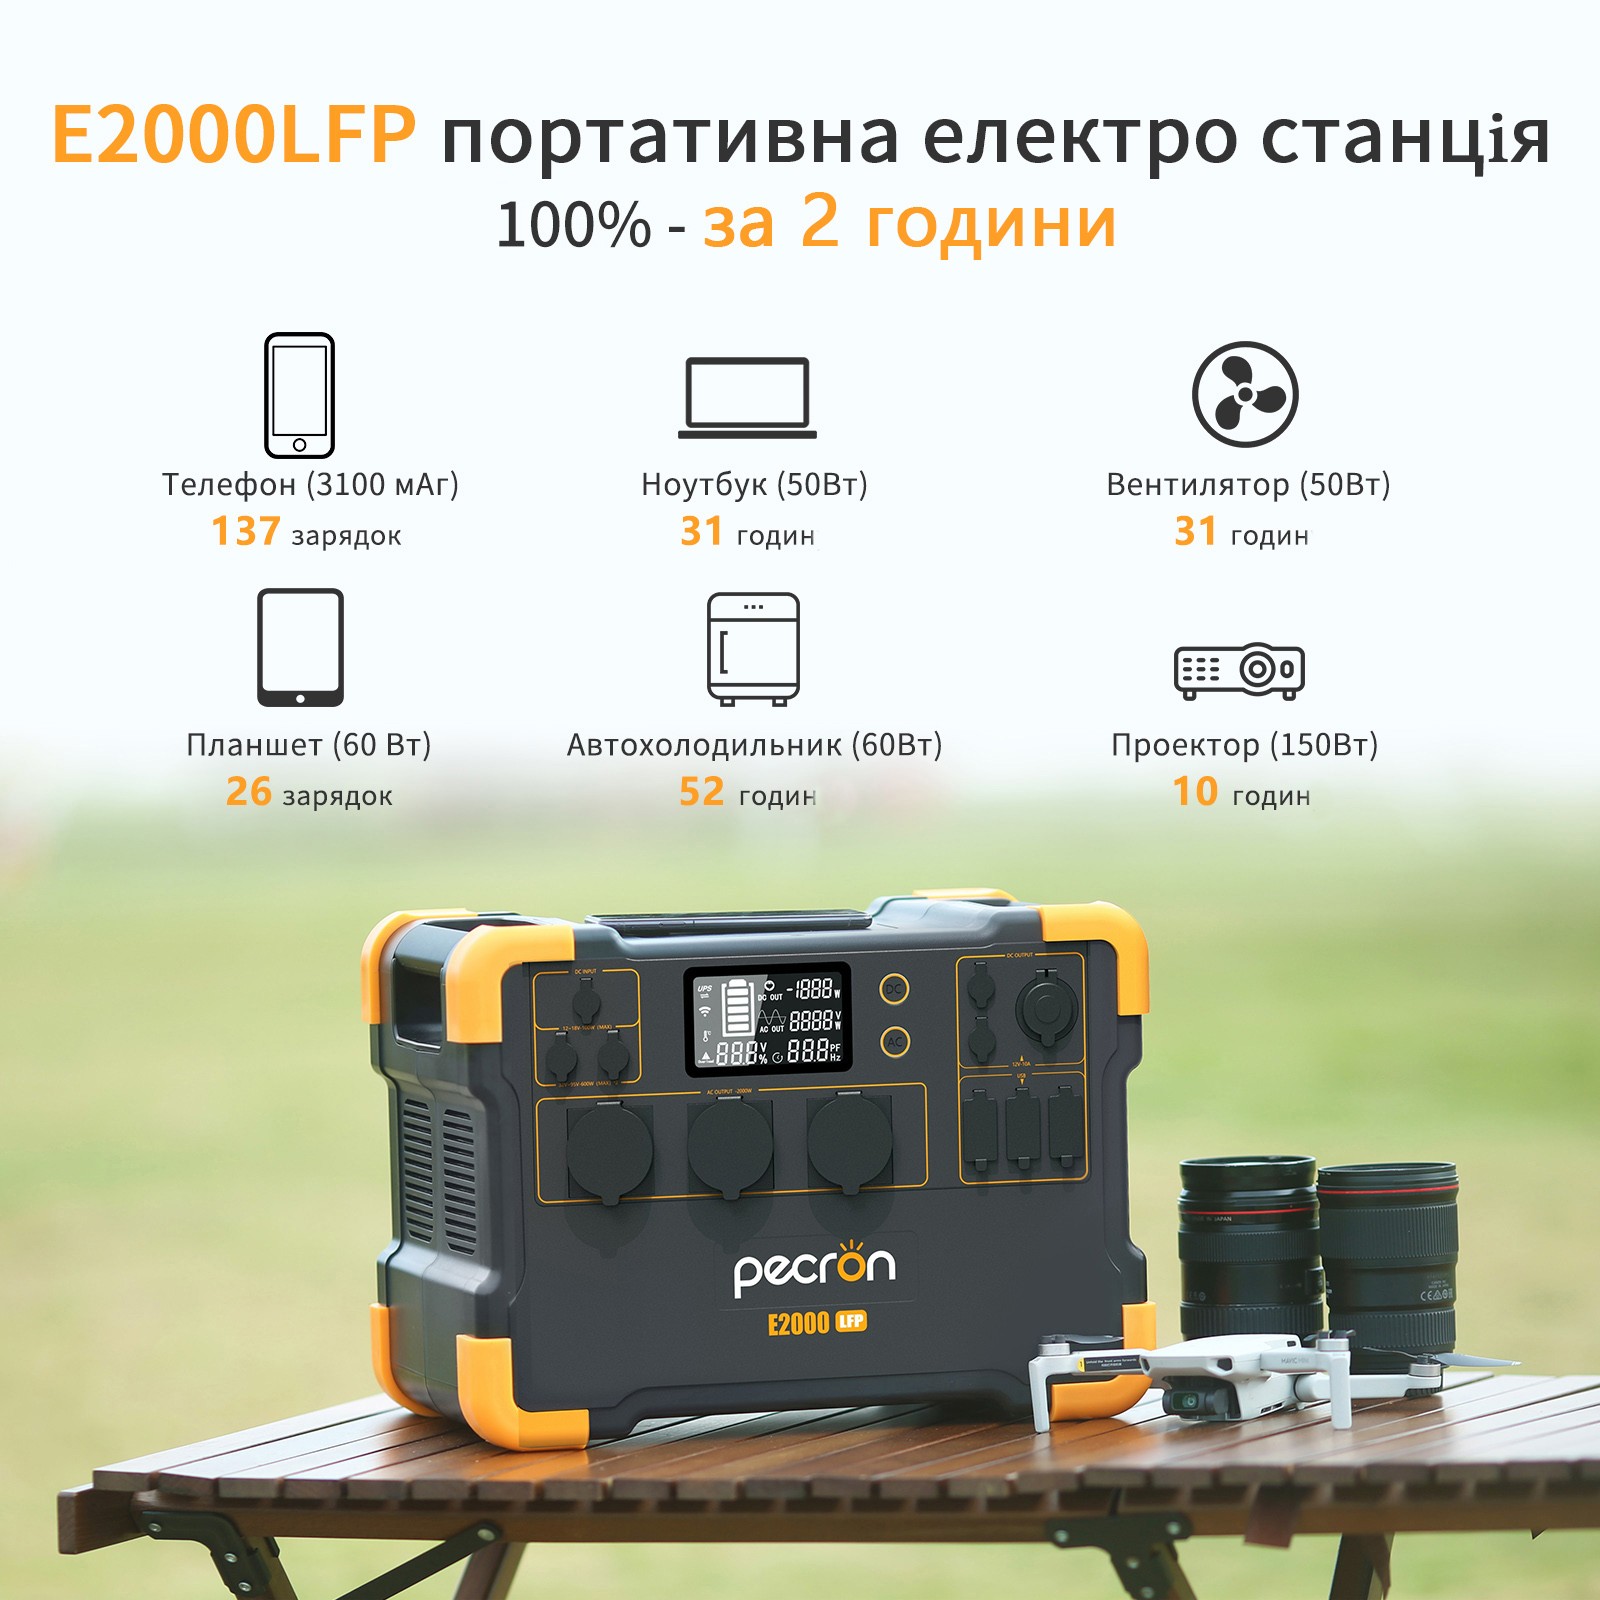 продаём Pecron E2000LFP в Украине - фото 4